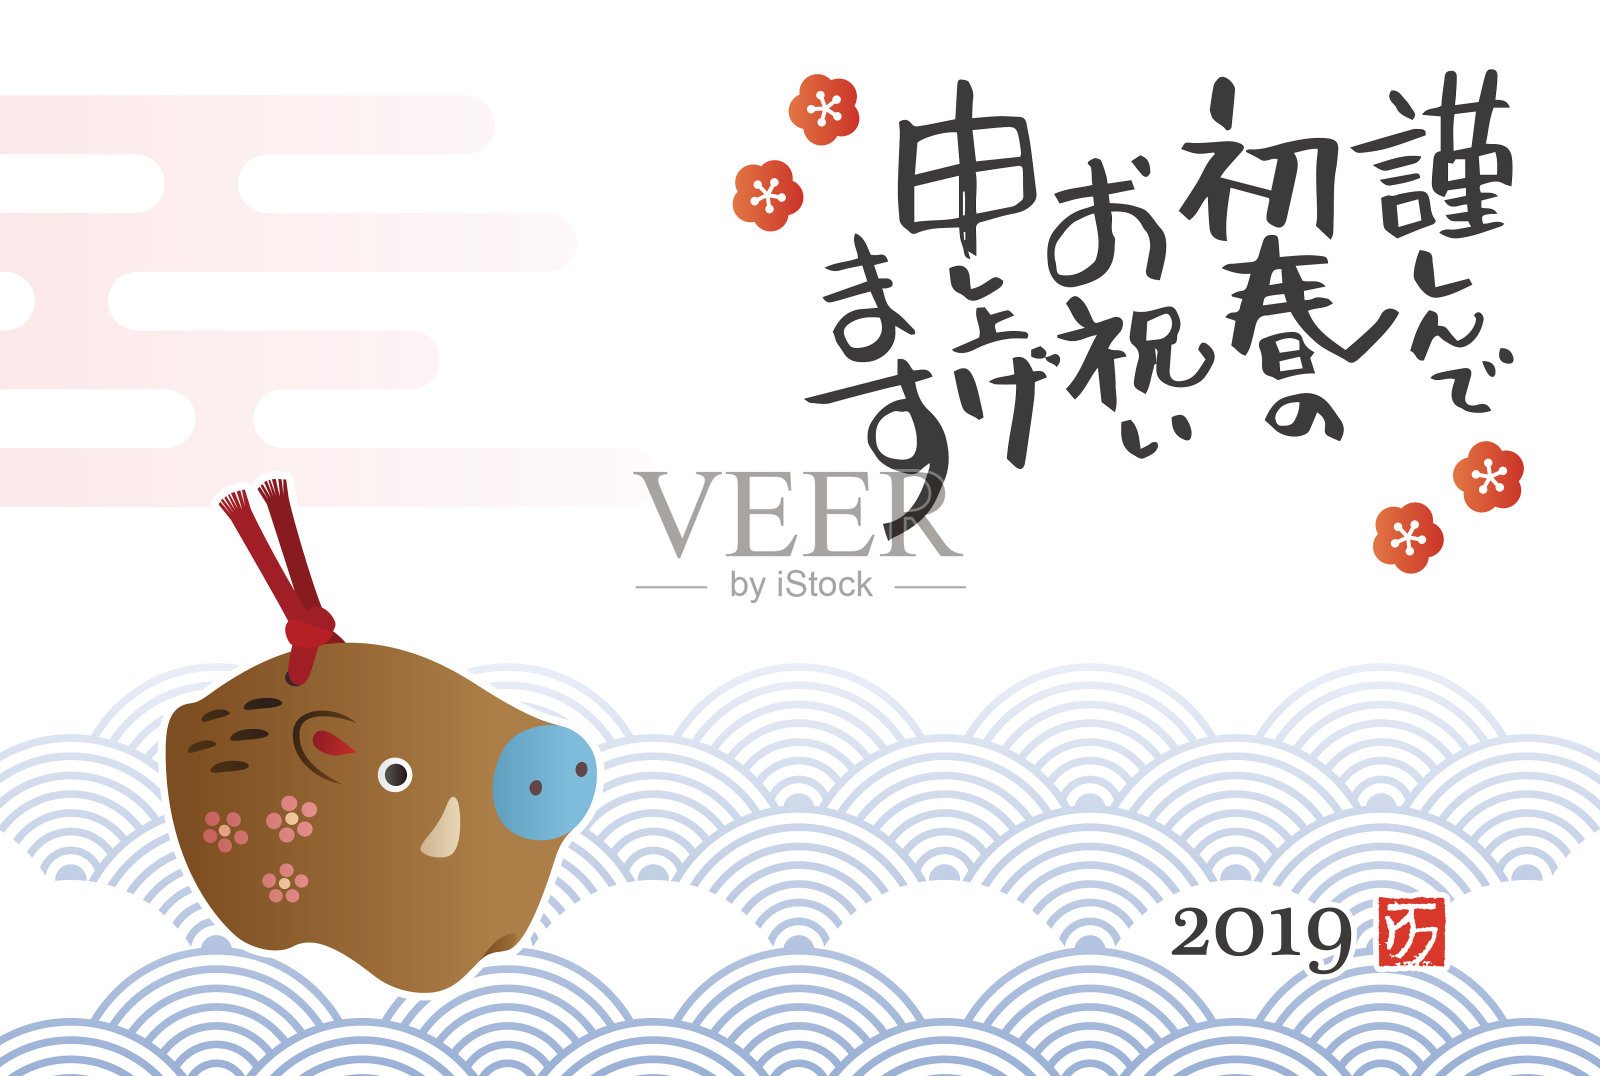 新年贺卡与中国生肖野猪陶瓷娃娃设计模板素材